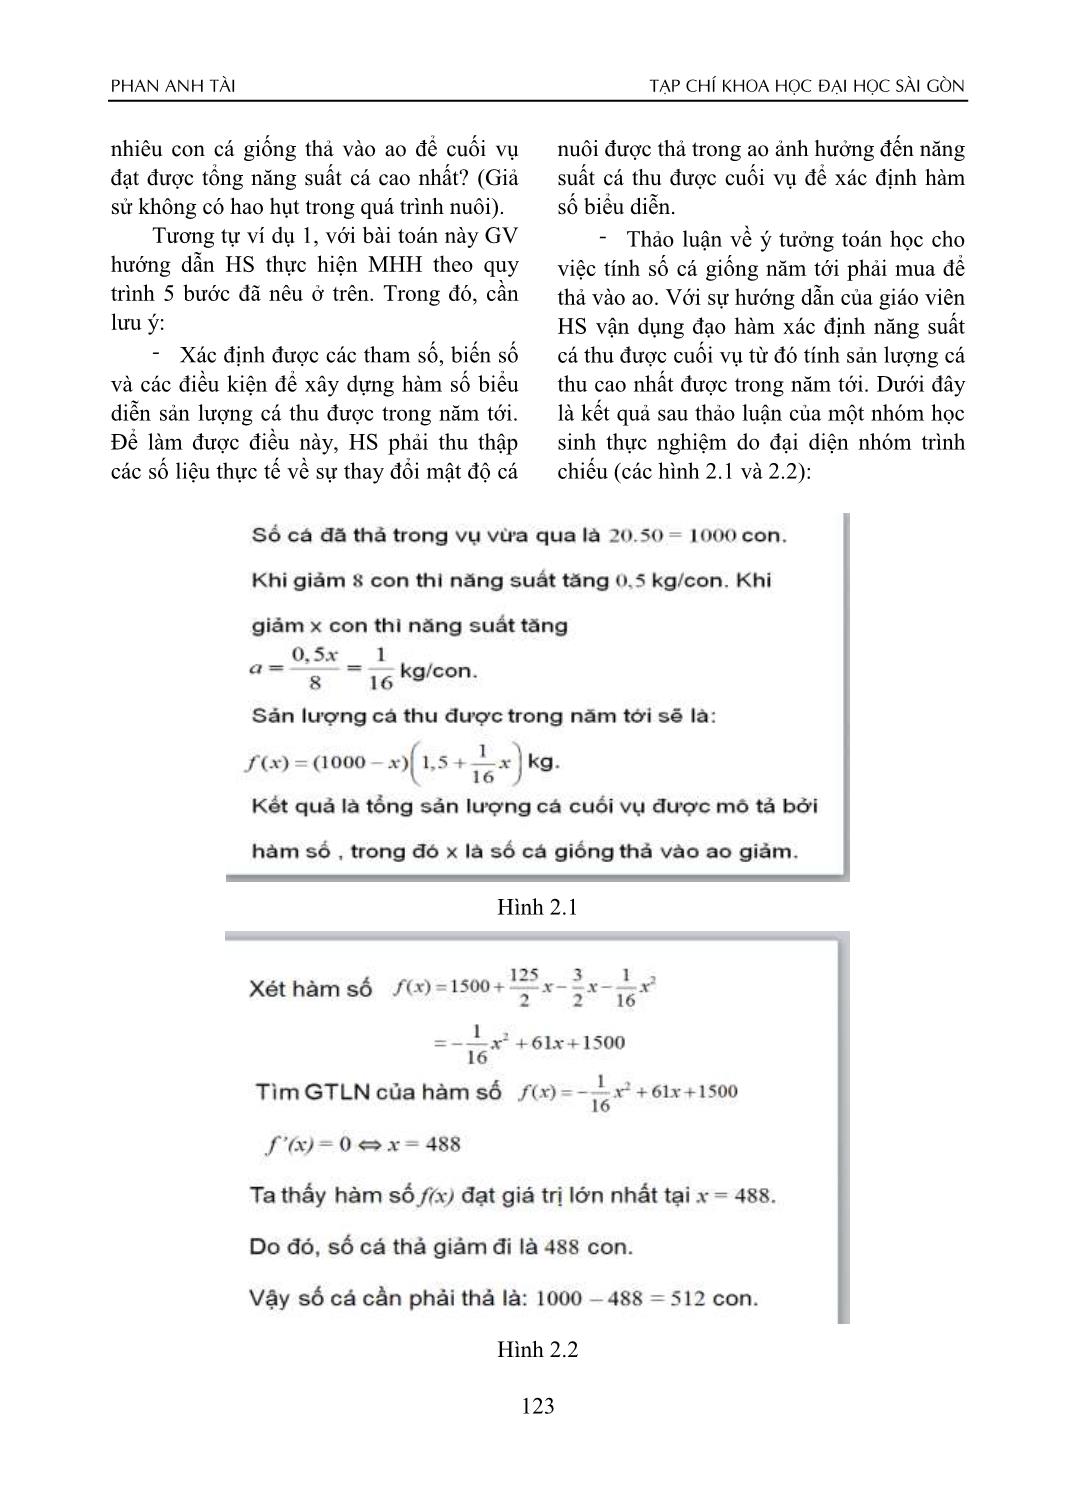 Tổ chức dạy học vận dụng đạo hàm giải bài toán thực tế thông qua mô hình hóa toán học trang 7